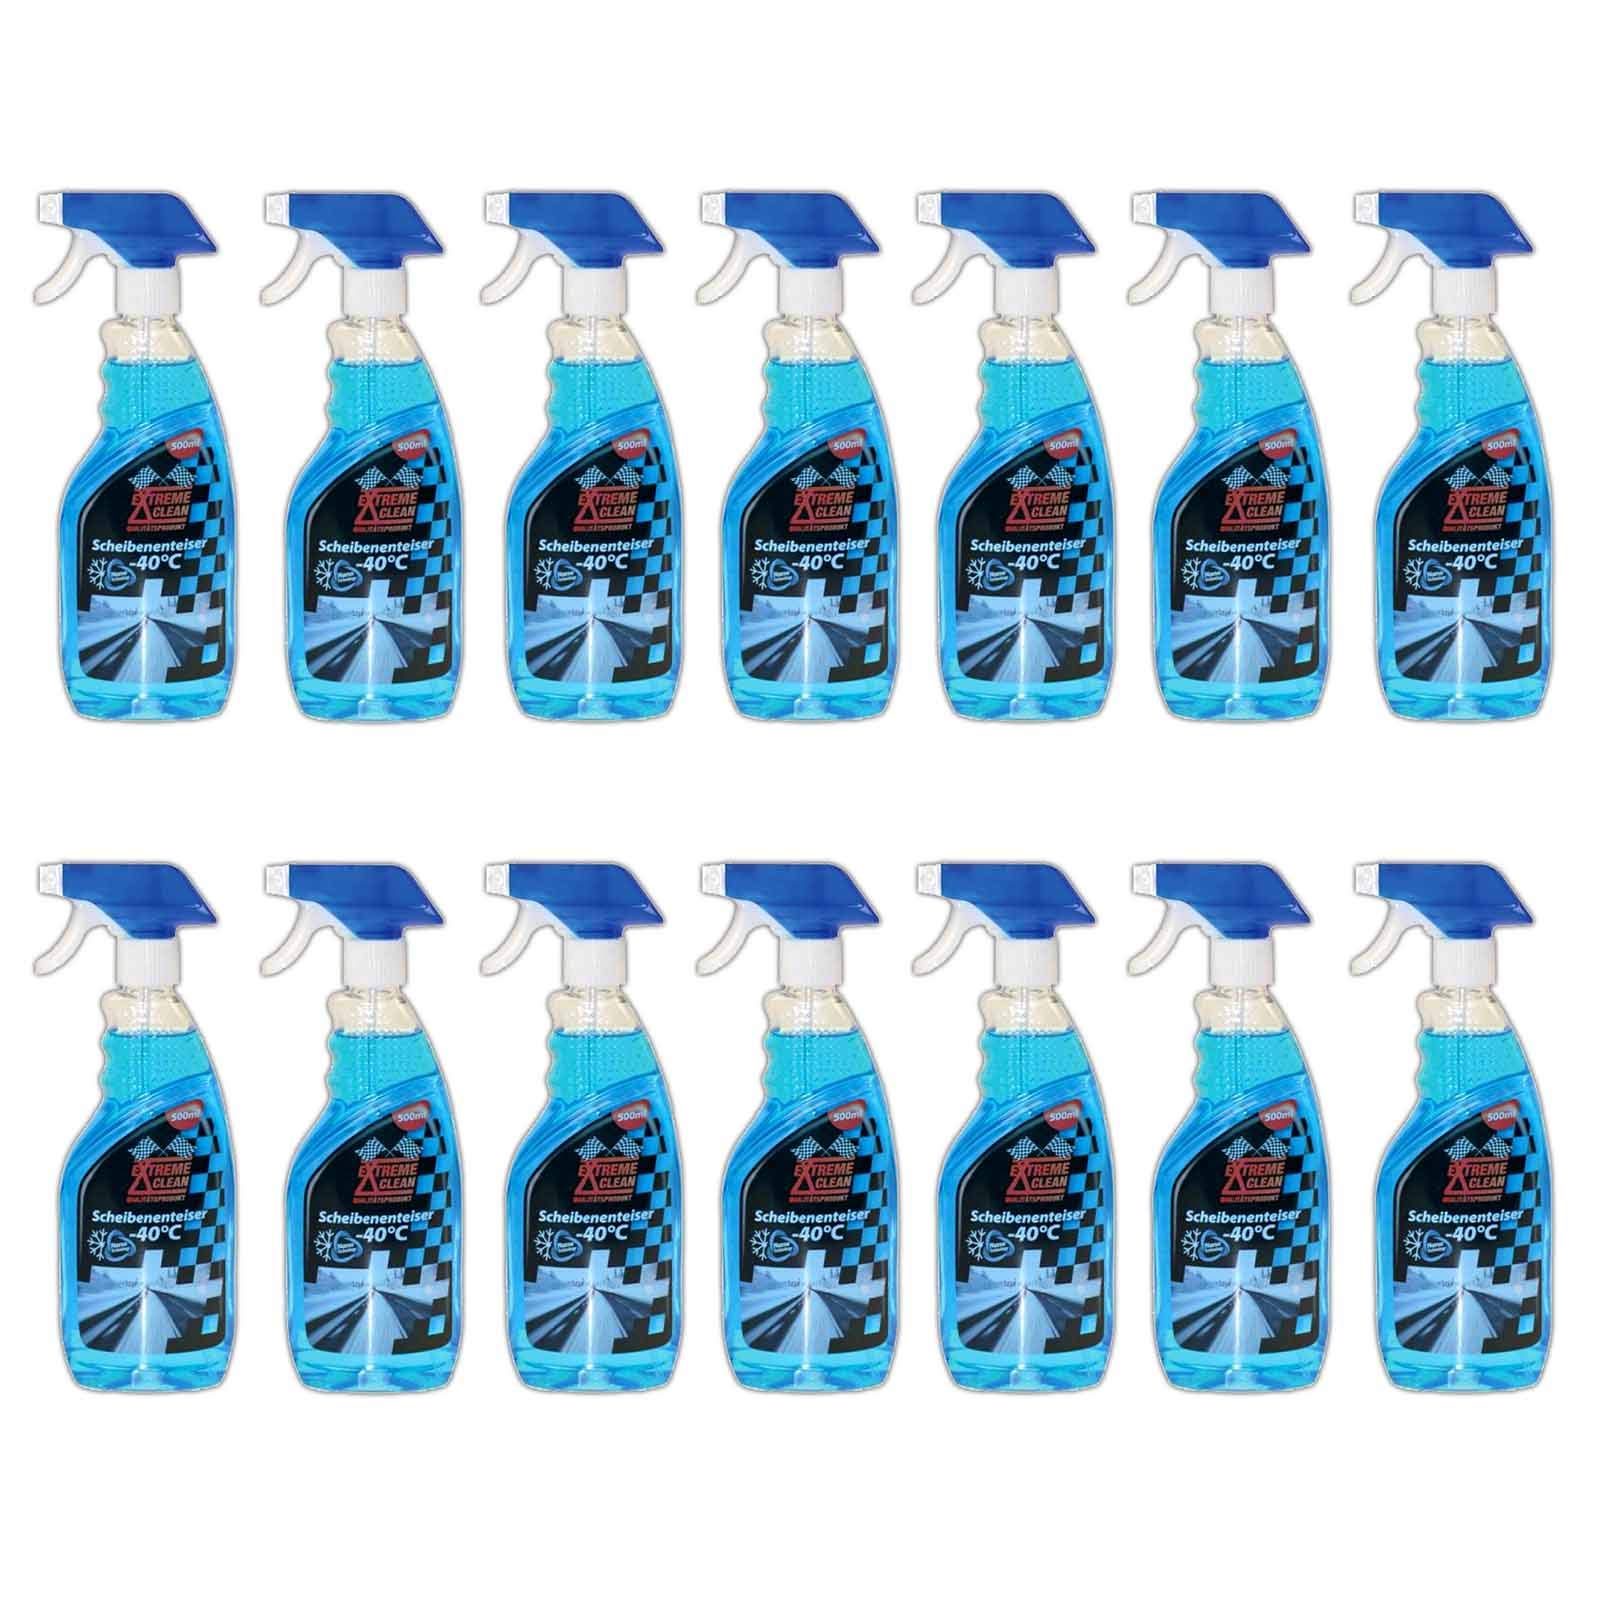 14x 500 ml Scheibenenteiser Spray Auto KFZ Enteiserspray Scheiben Enteiser von Extreme Clean